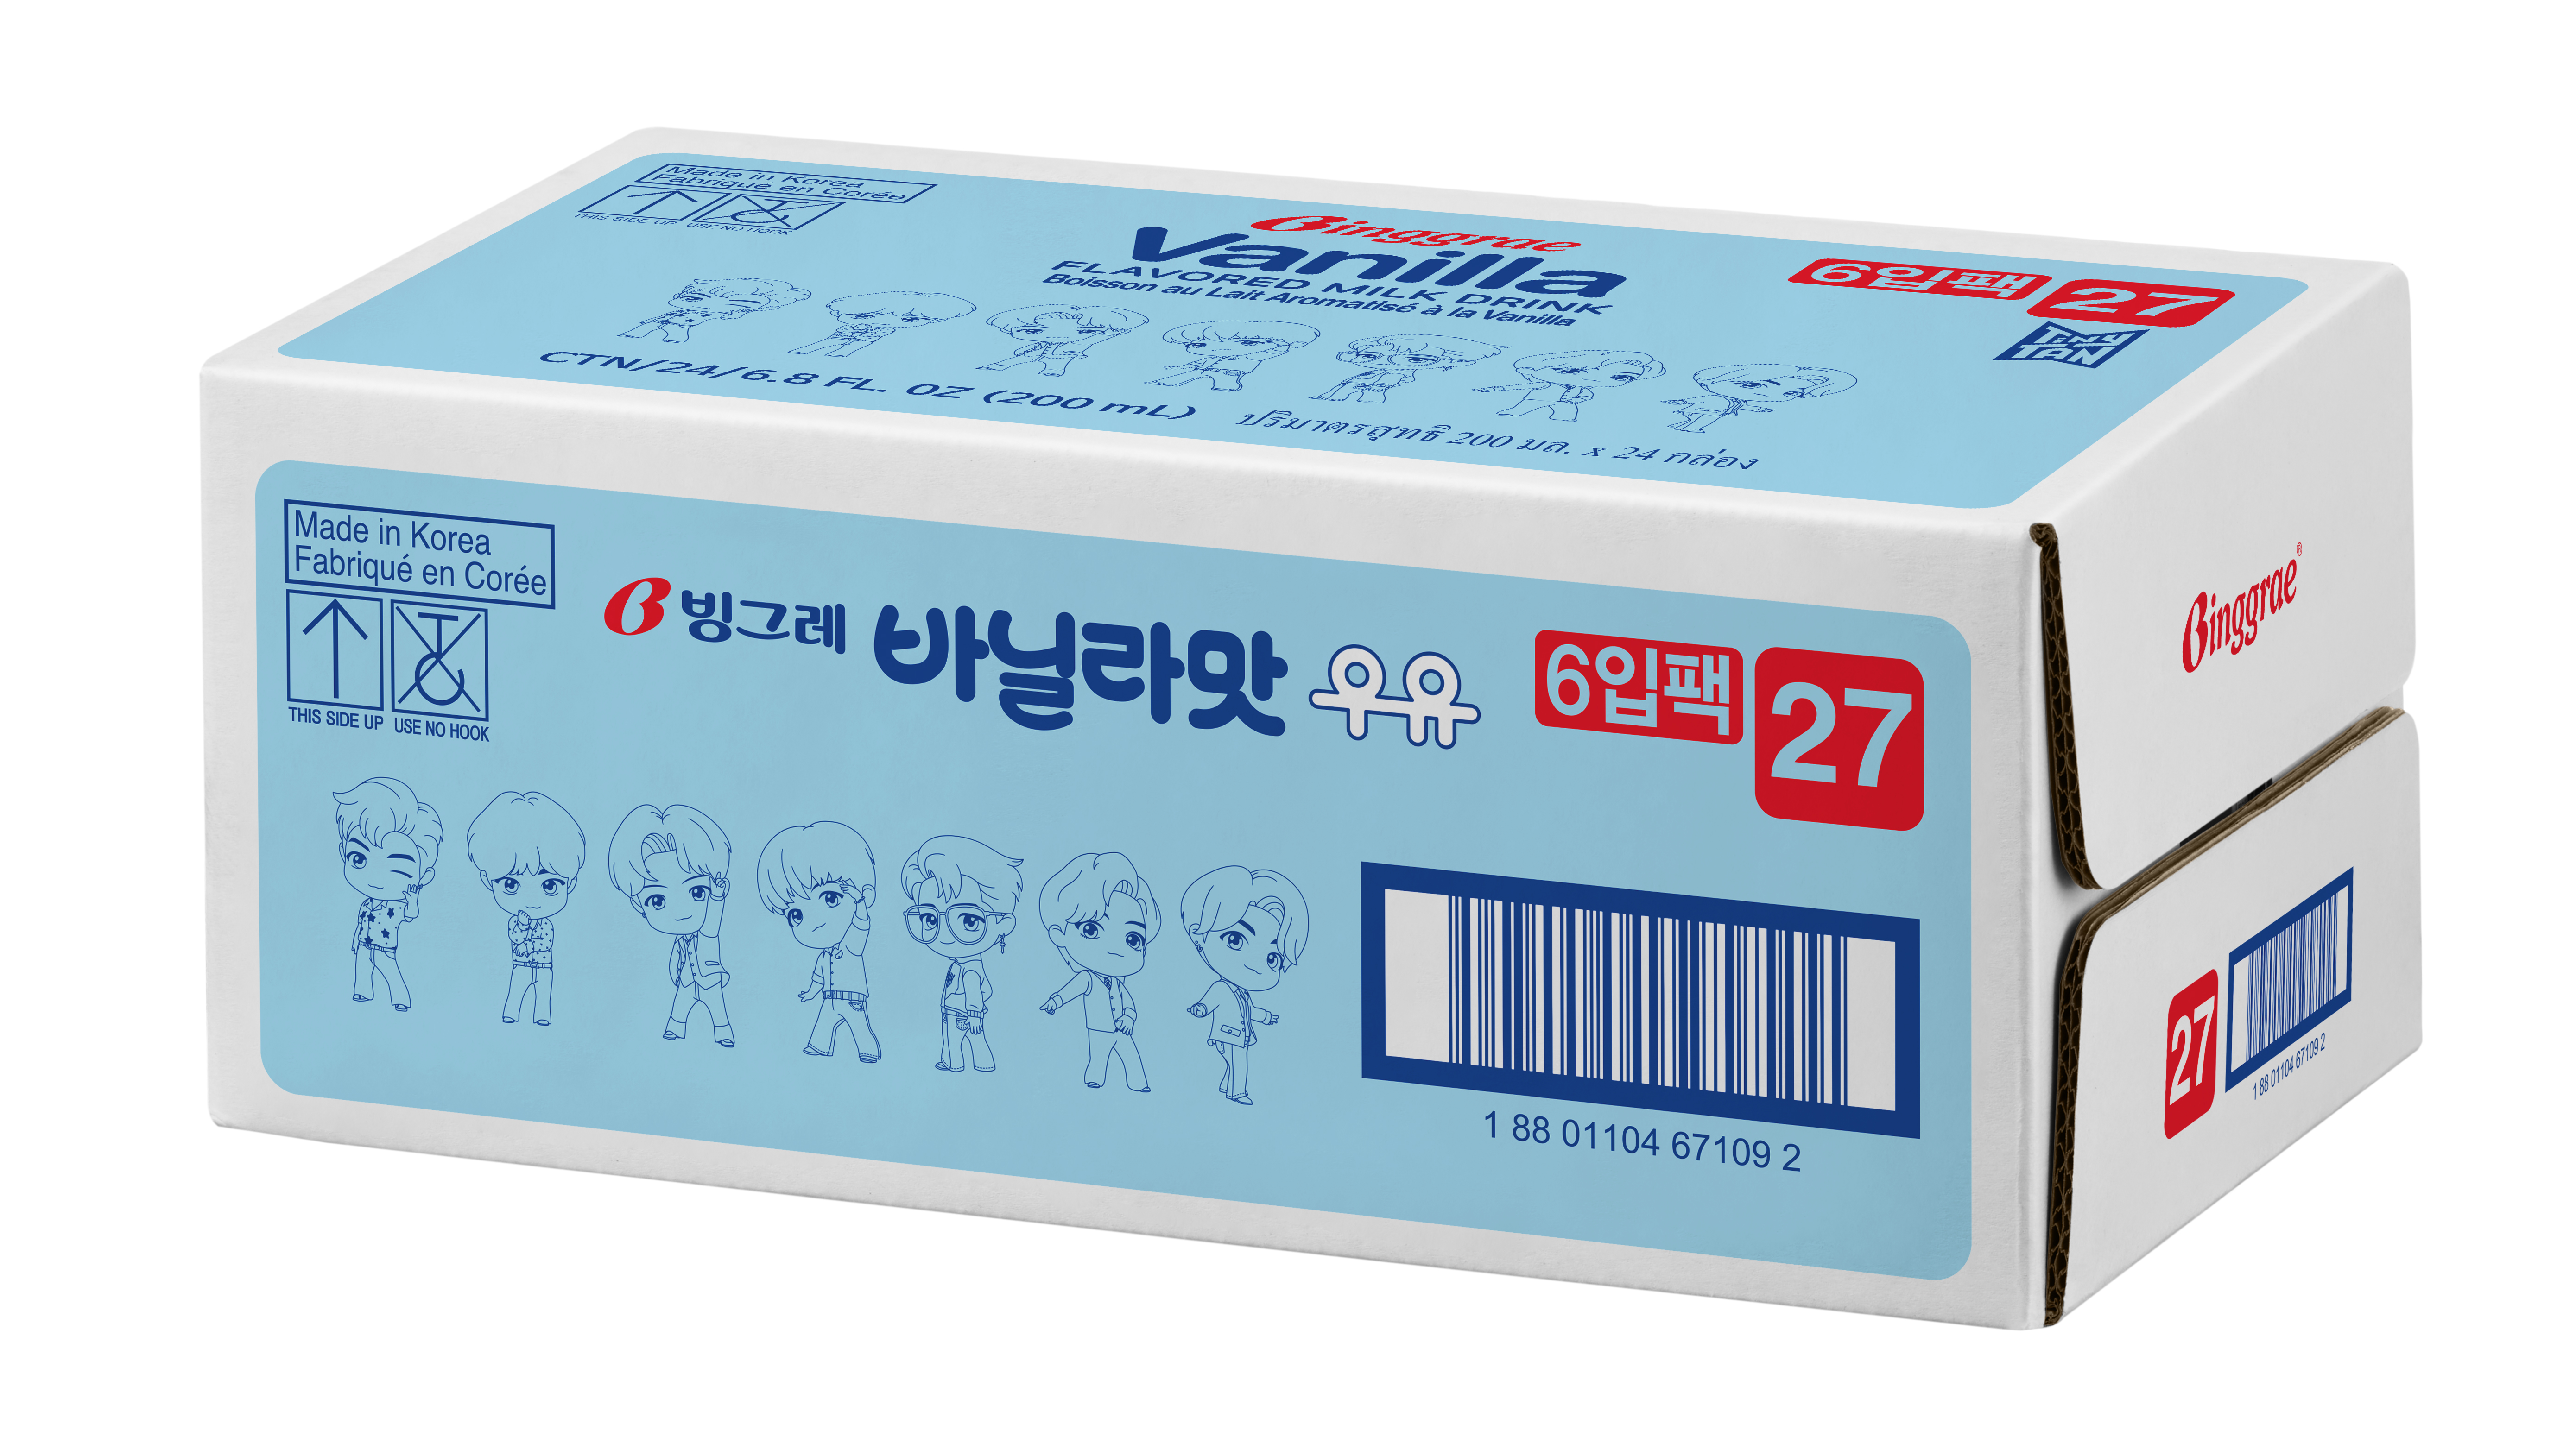 Thùng Sữa Vani Hàn Quốc Binggrae Vanilla Milk (200ml x 24 hộp)